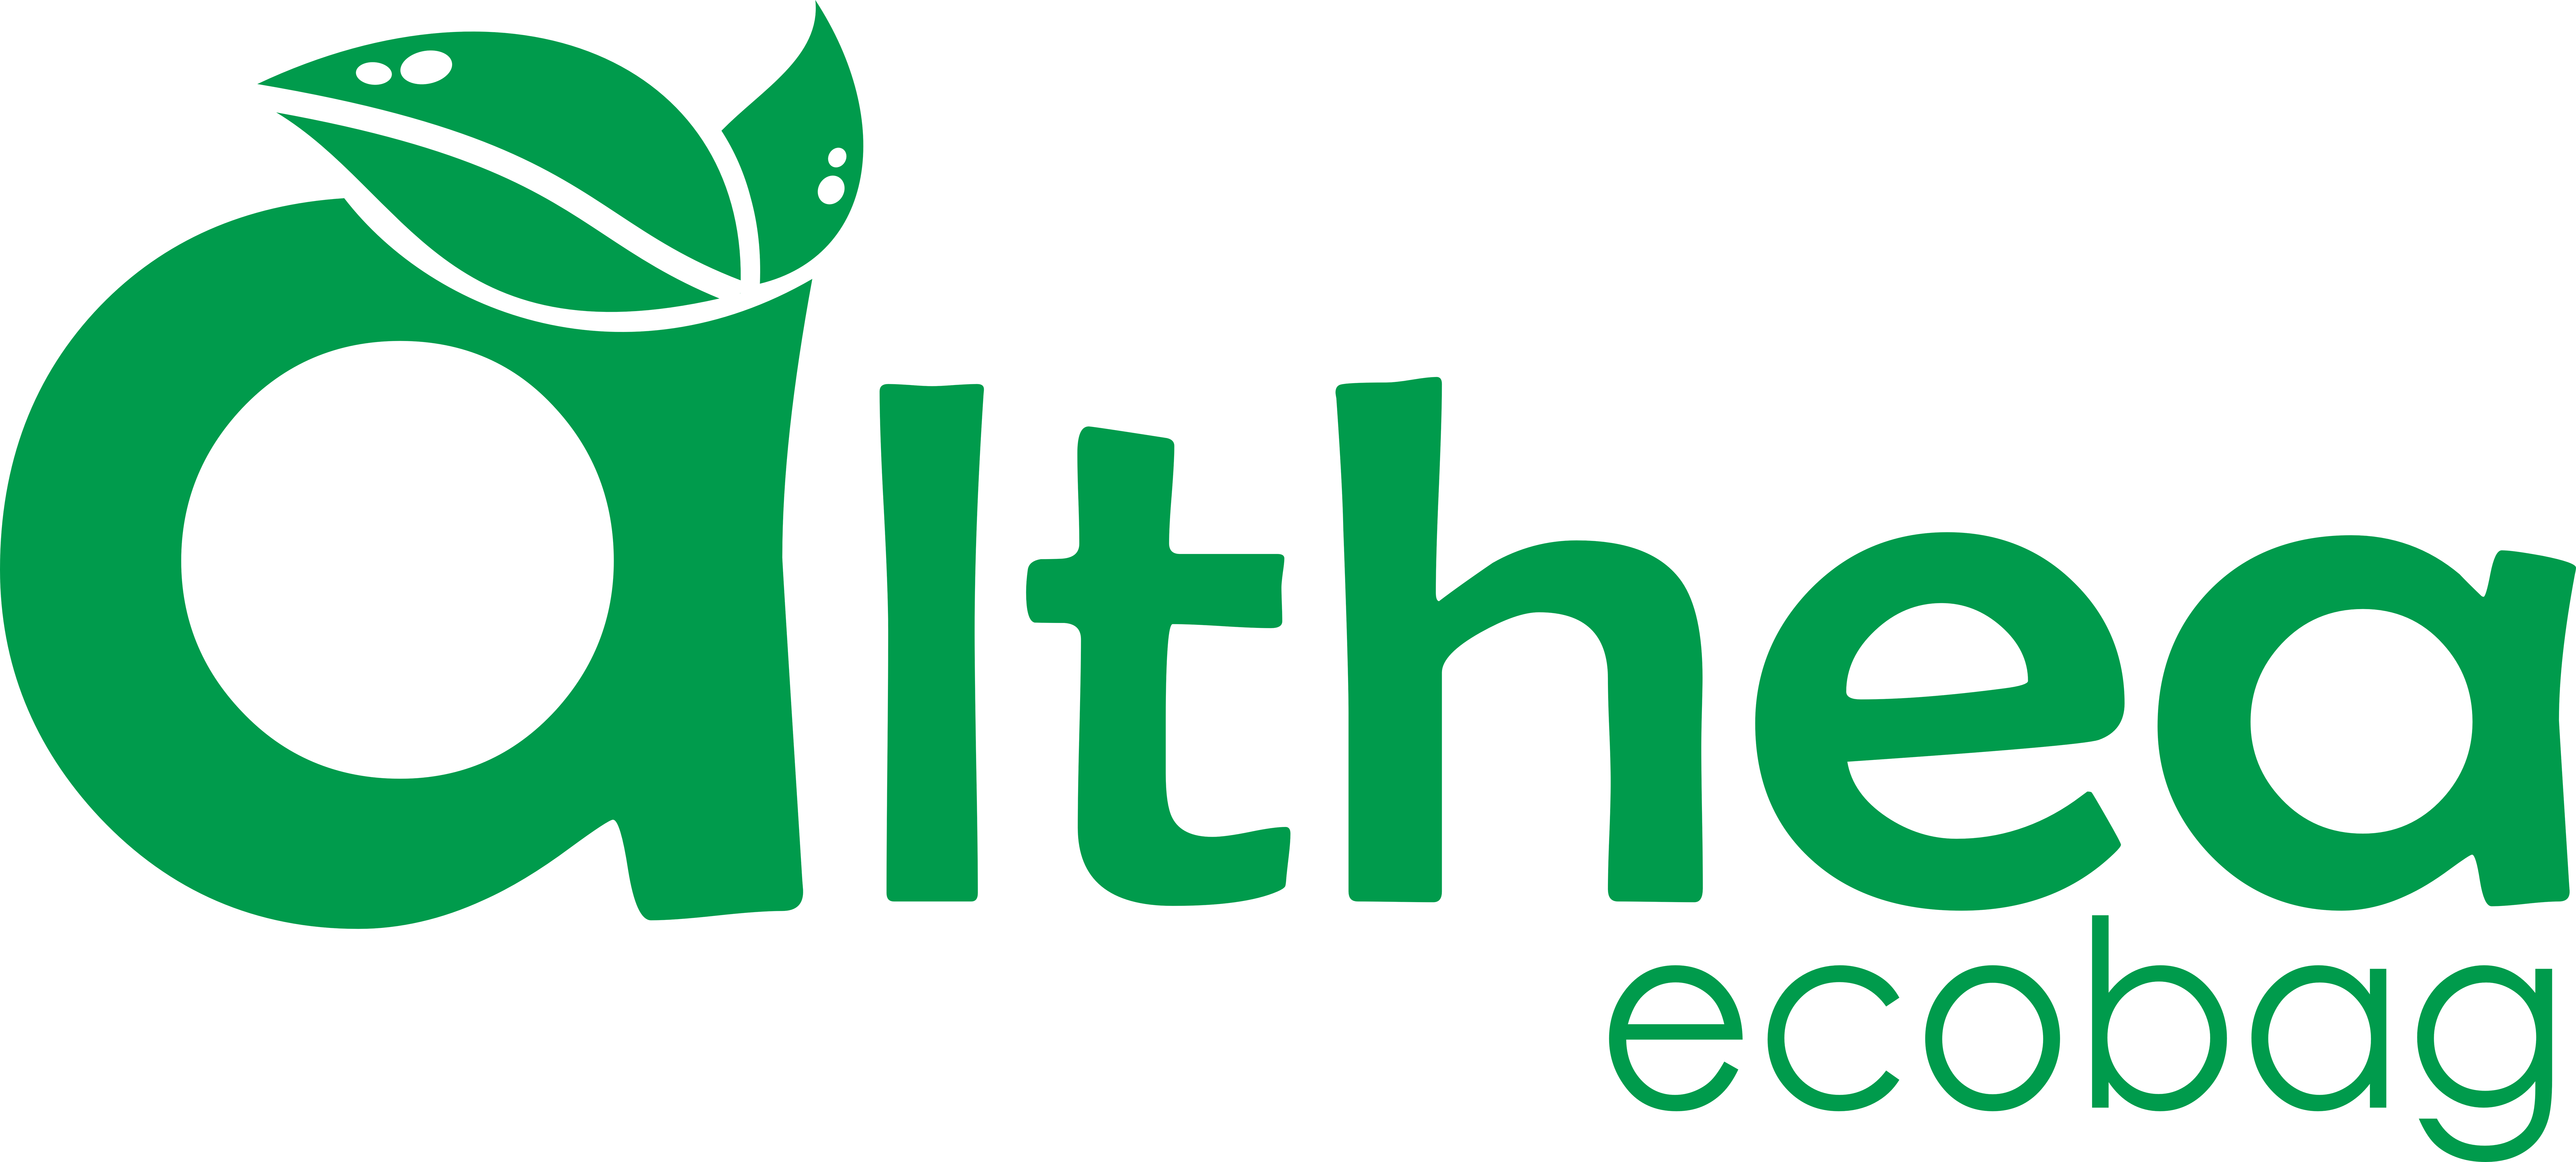 Althea Ecobag